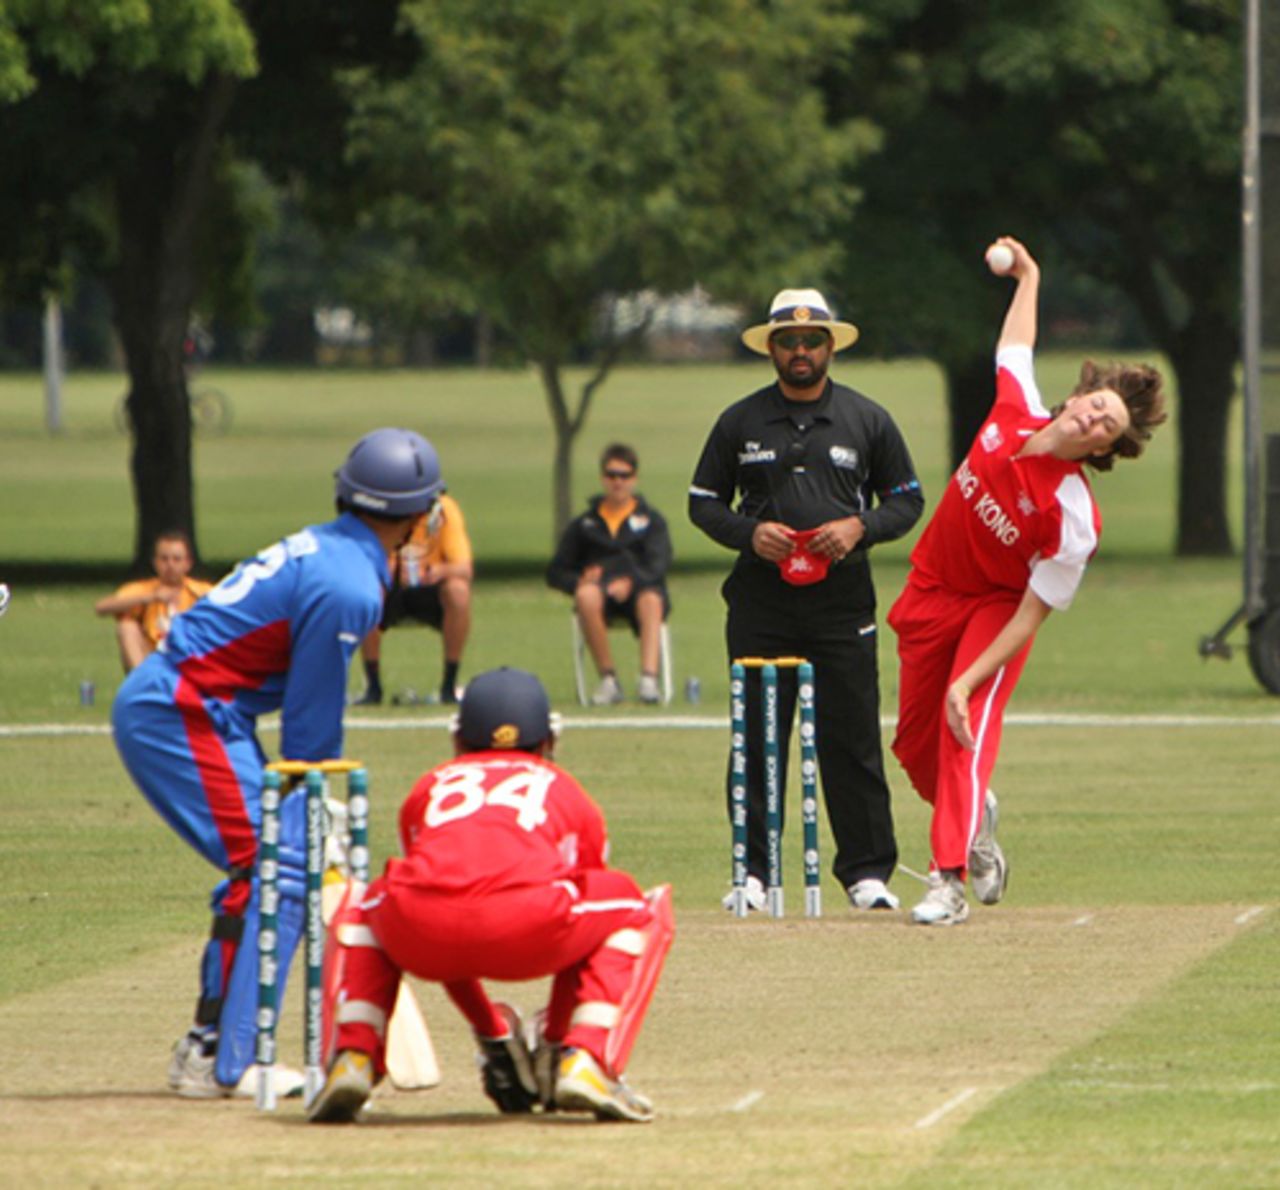 Alex Smith bowling against Afghanistan U19